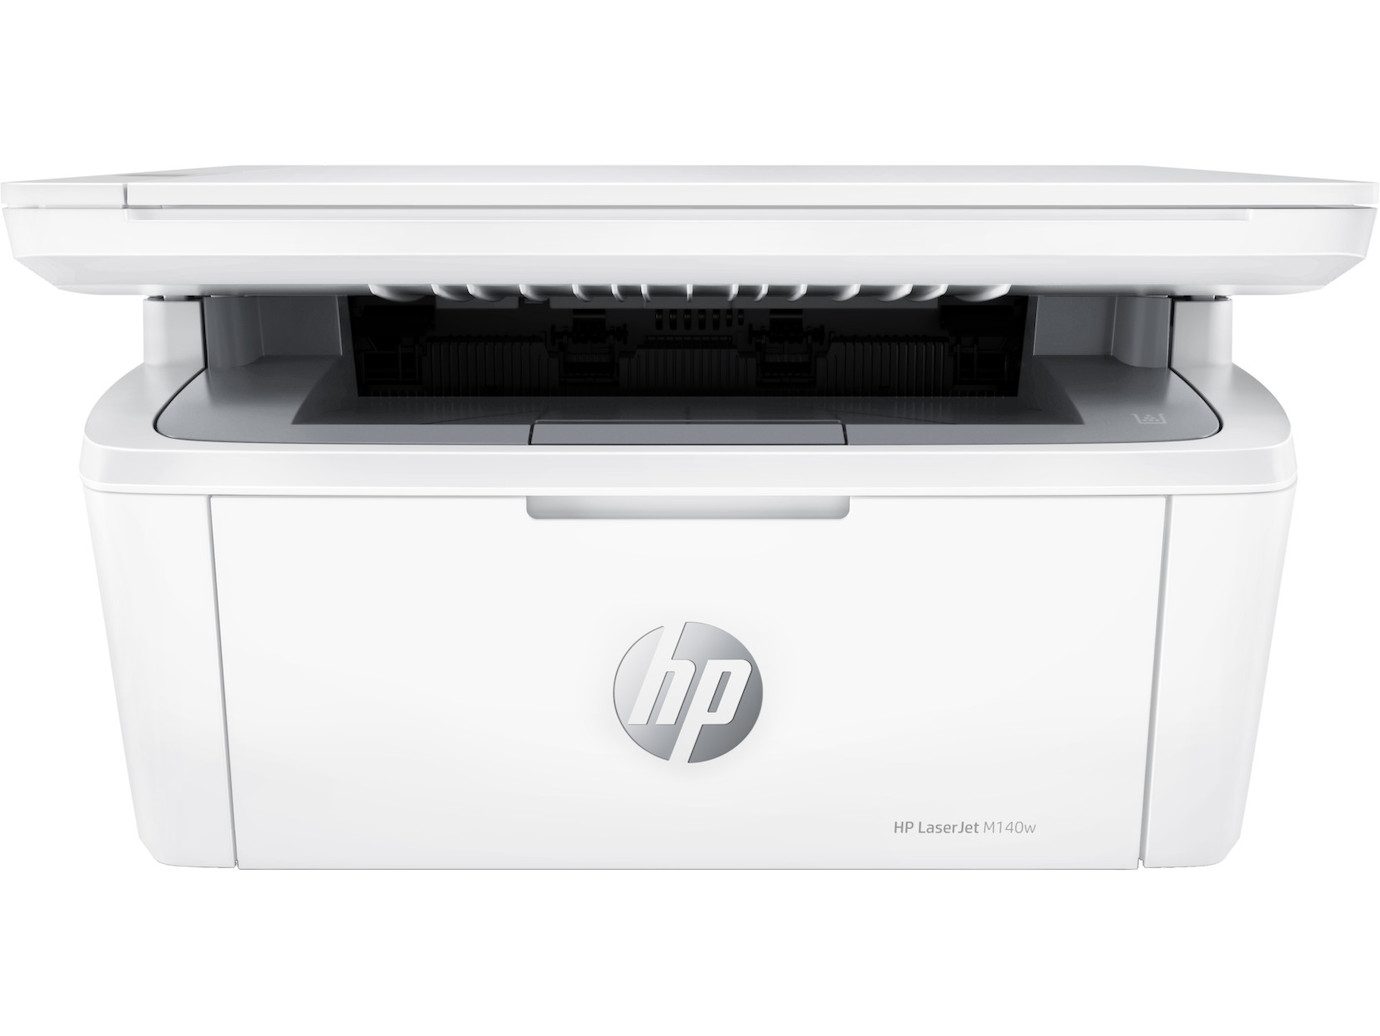 HP LaserJet MFP M140w Multifunktions-Laserdrucker